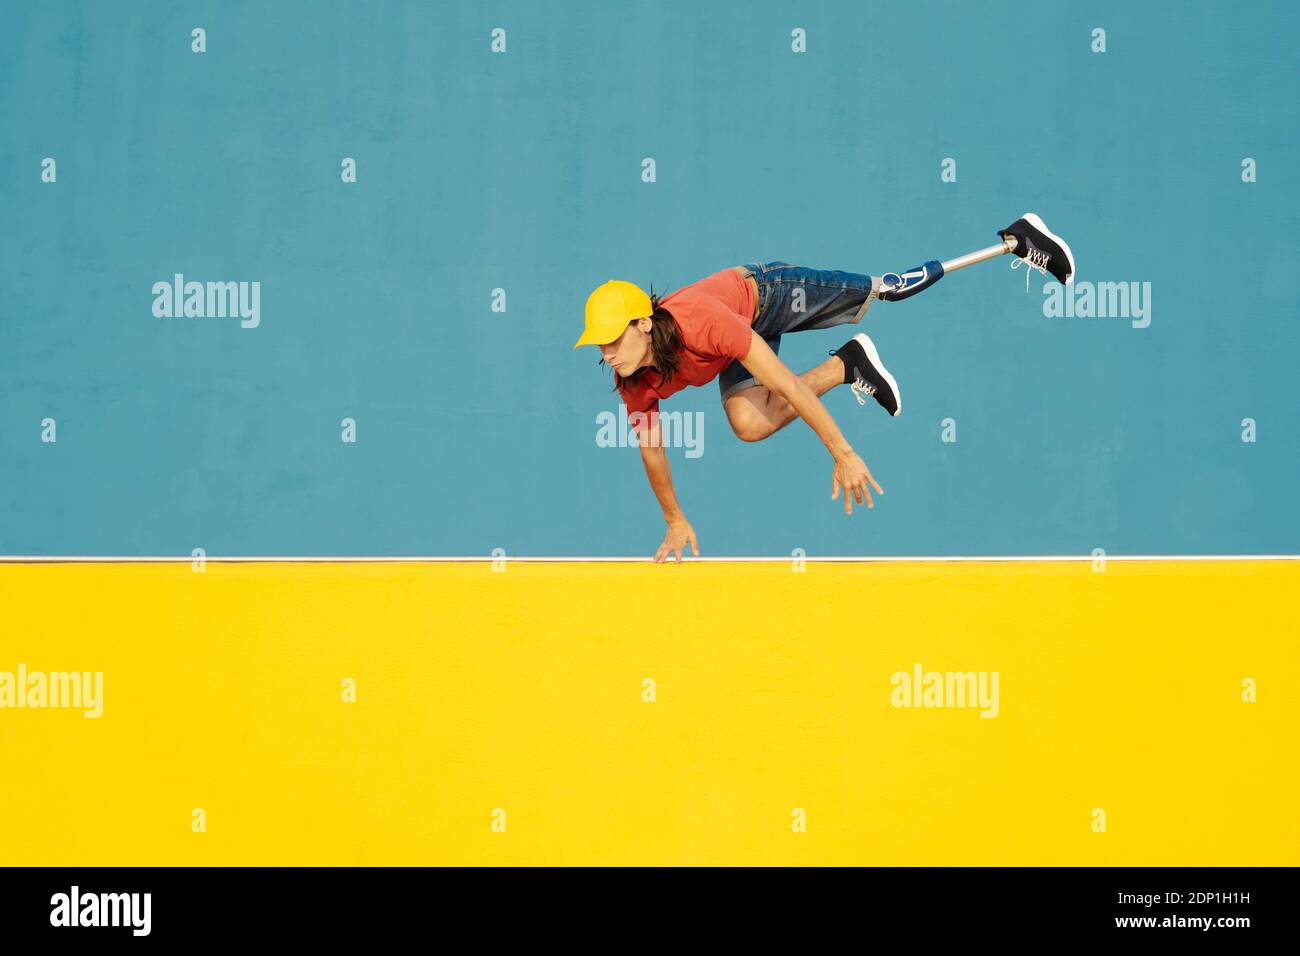 Mann mit körperlicher Behinderung springt gegen mehrfarbige Wand Stockfoto